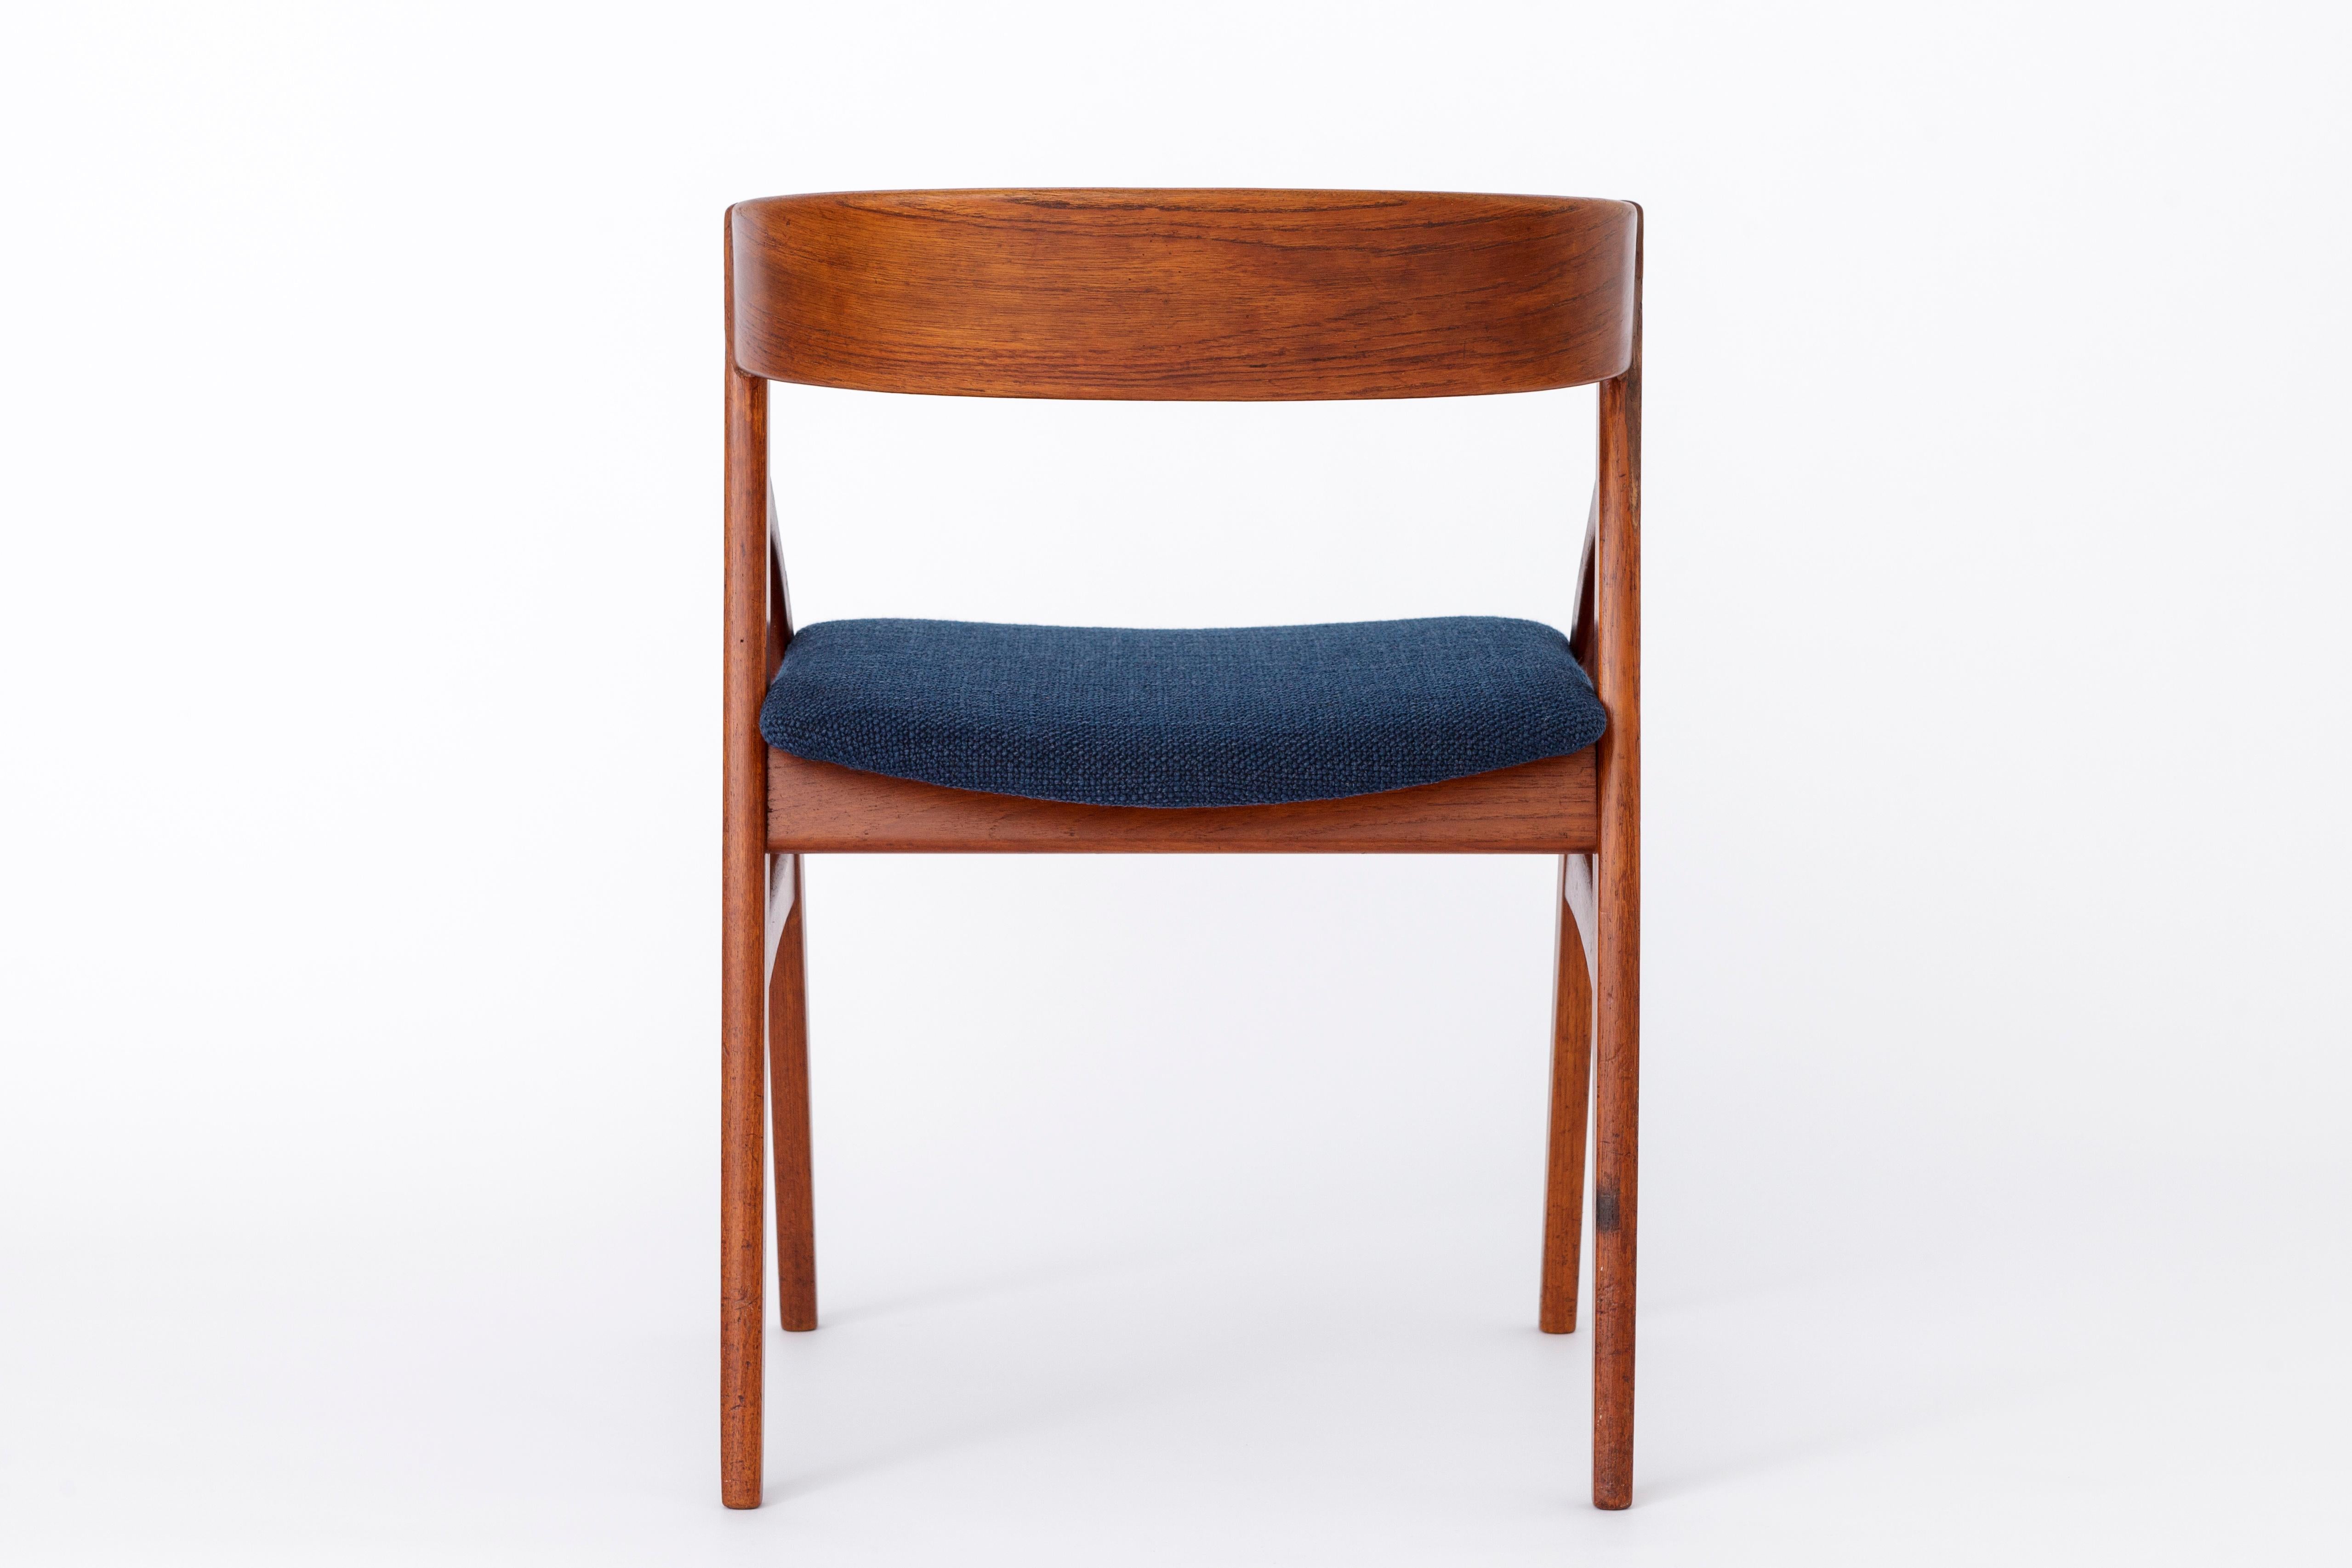 Dyrlund Teak Chair 1960s Vintage - Repaired 1